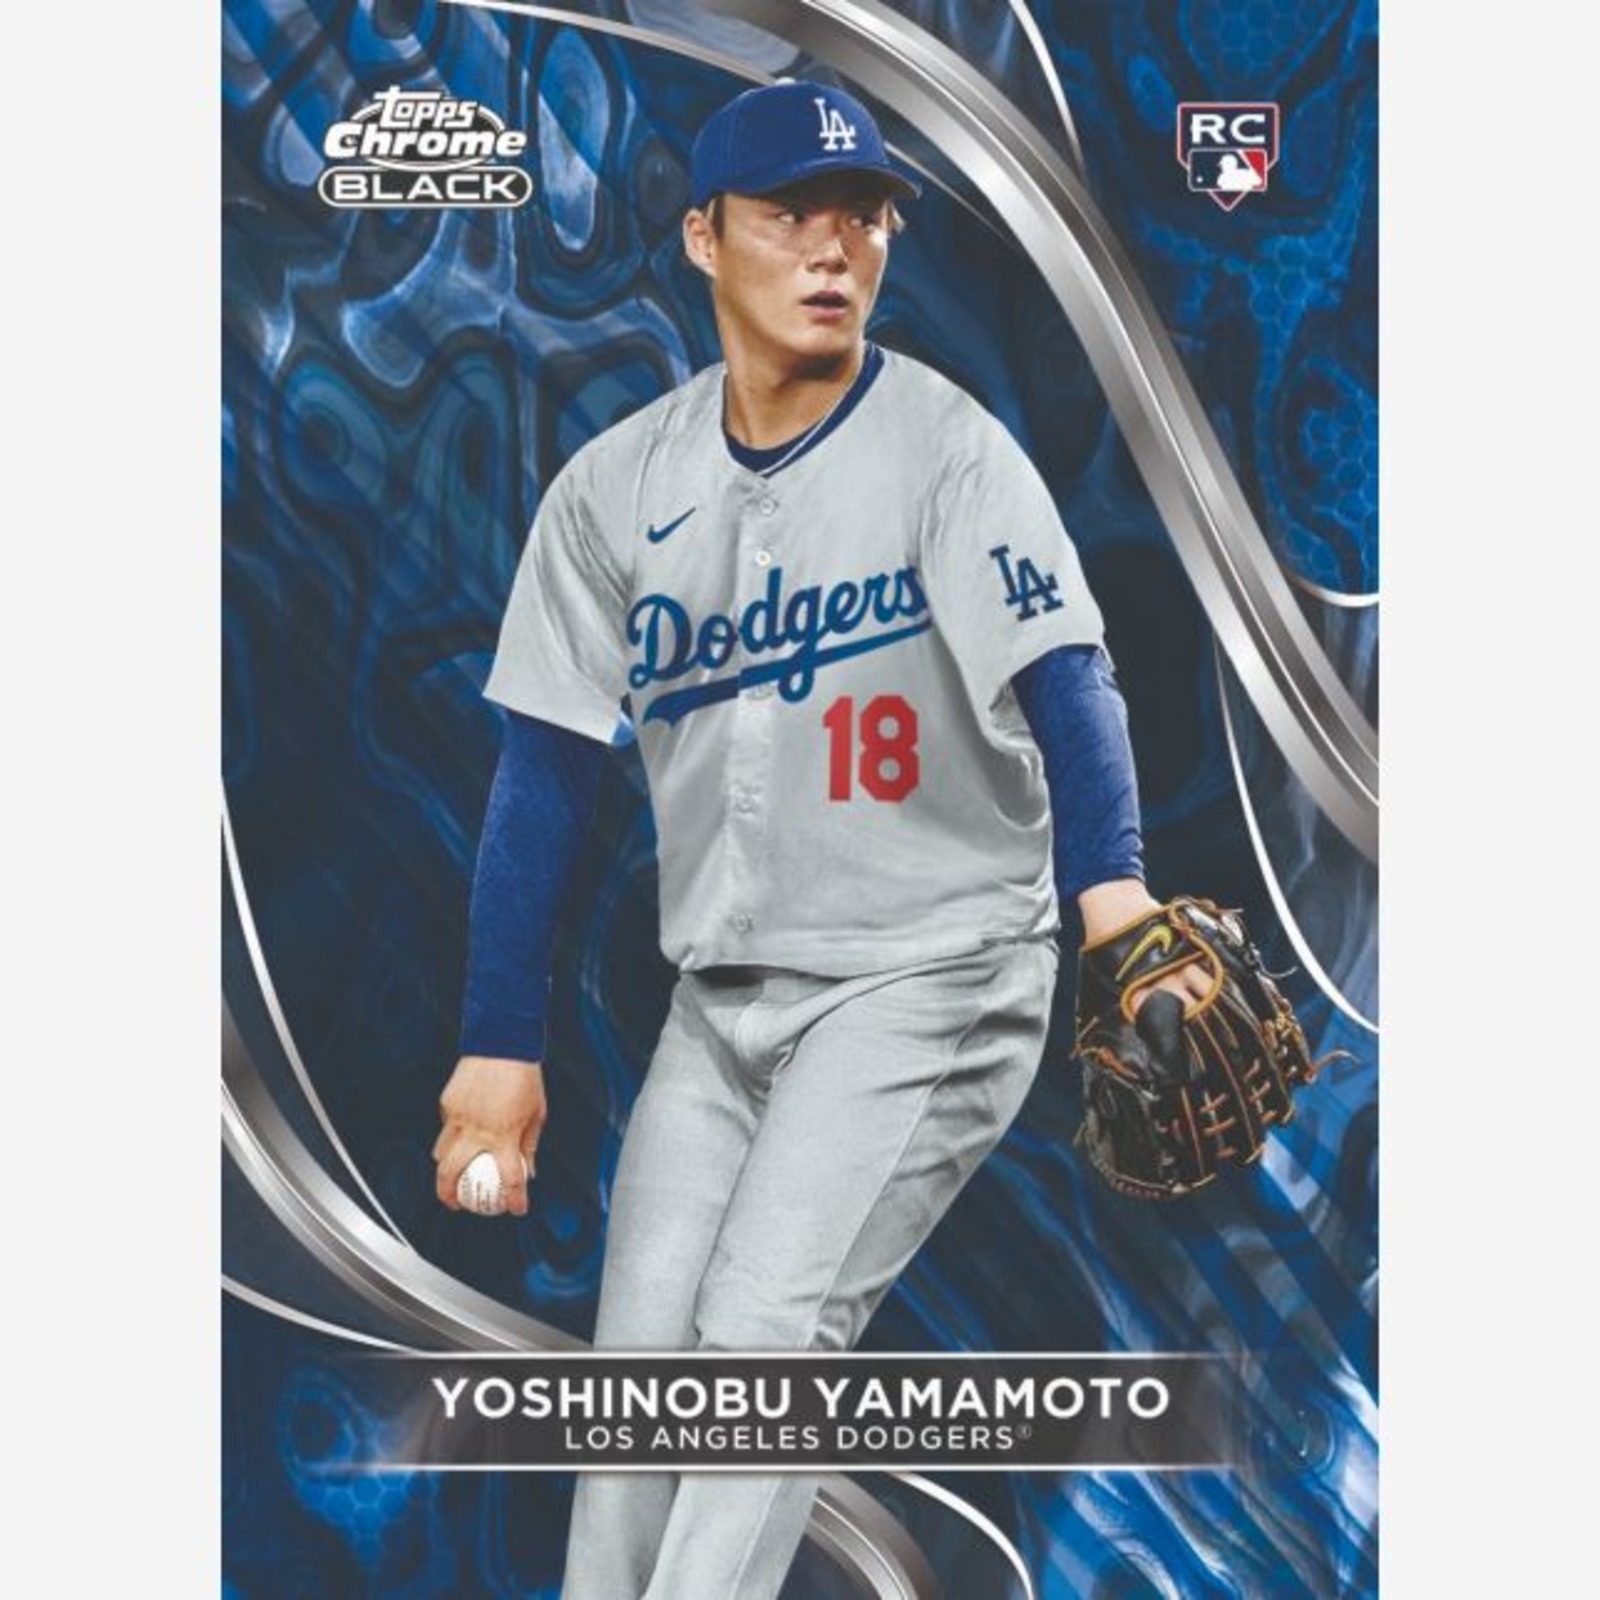 2024 Topps Chrome Black Yoshinobu Yamamoto rookie card